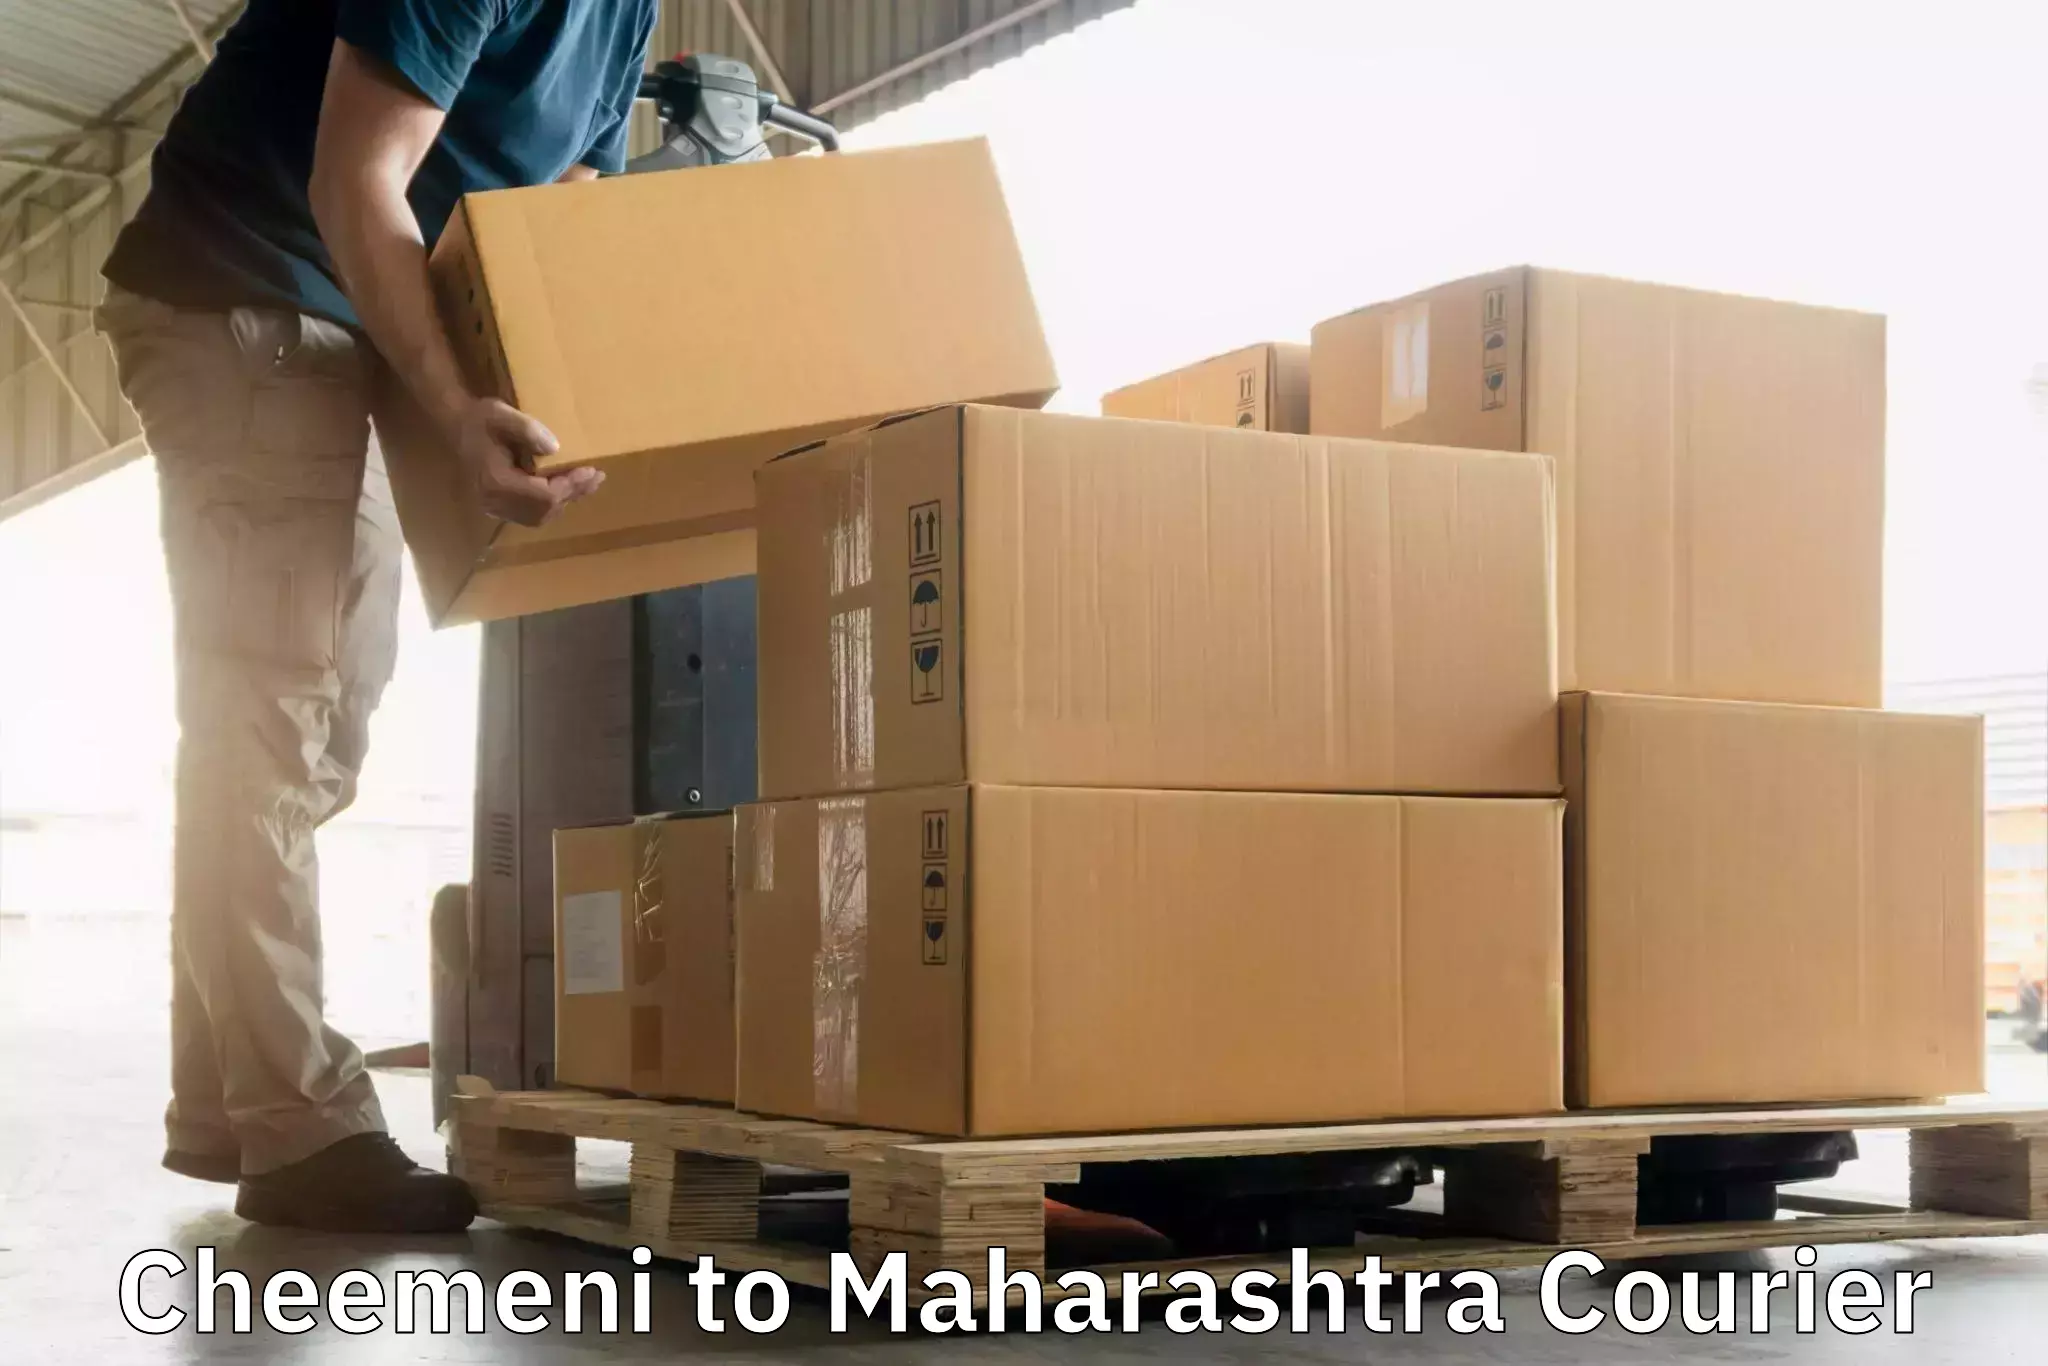 High-speed parcel service Cheemeni to Sindhudurg